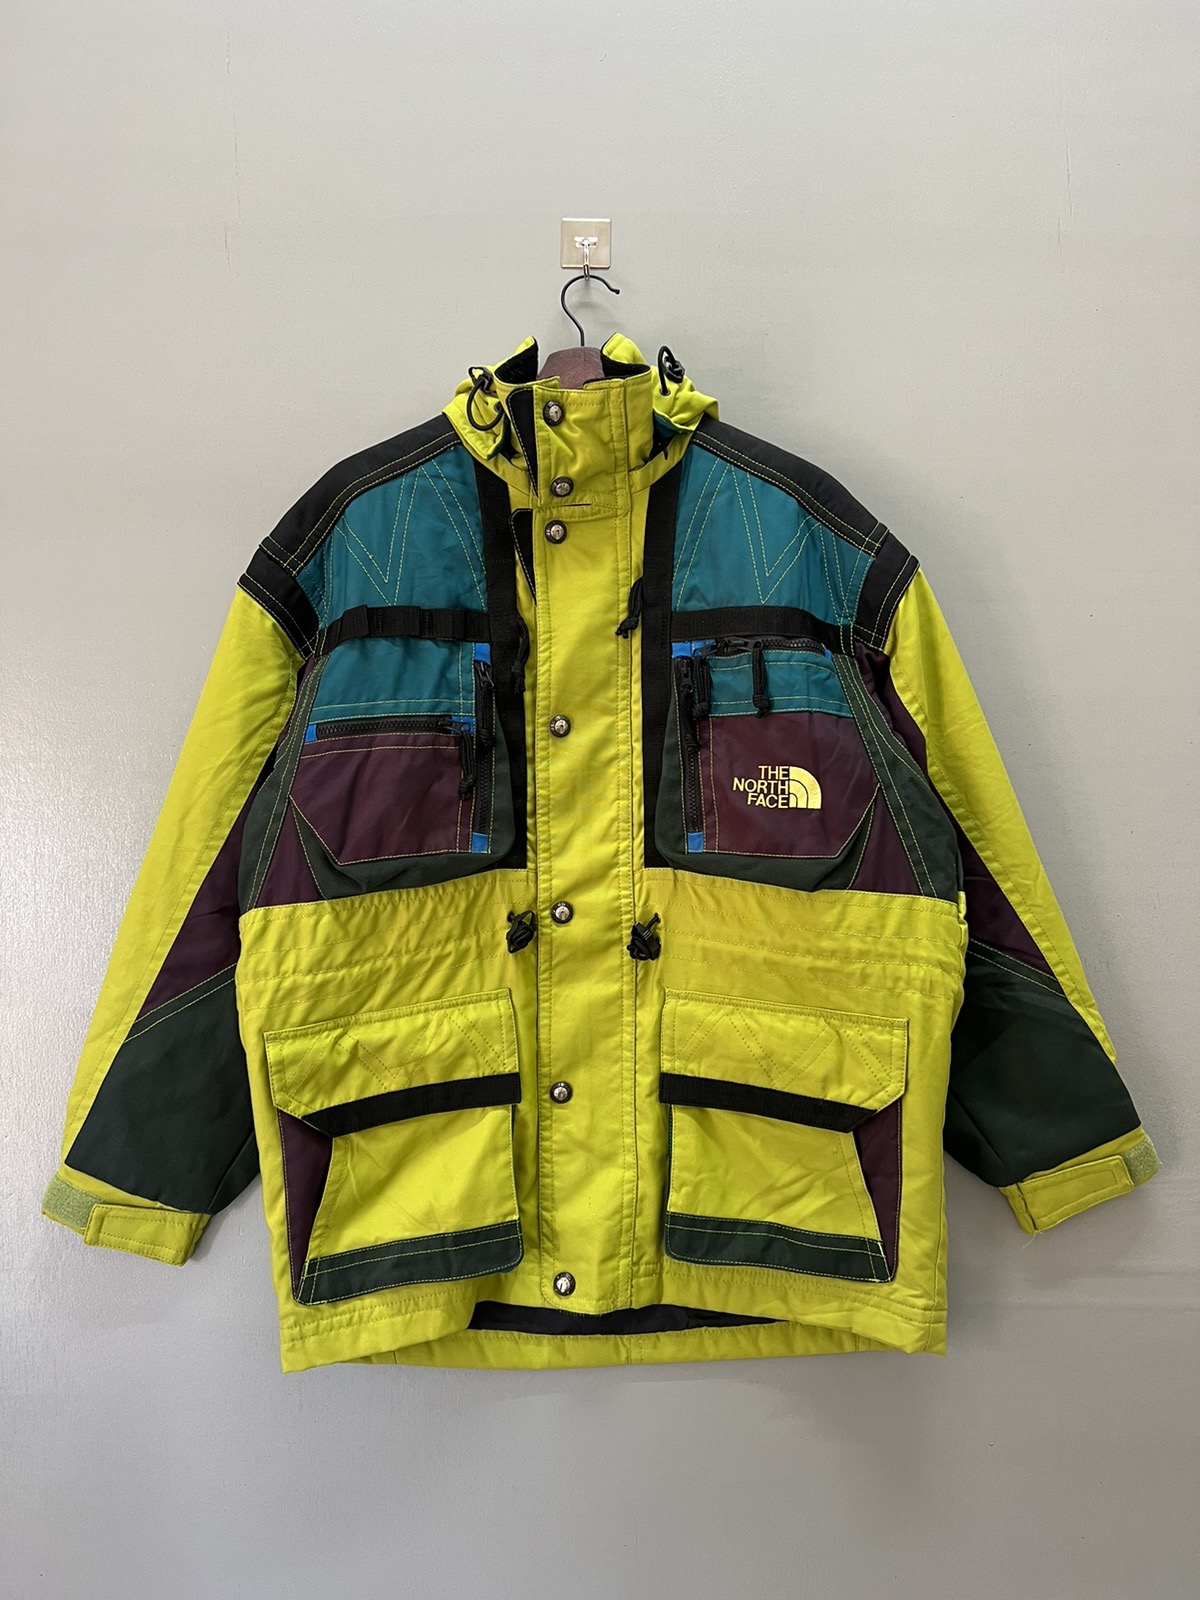 Vintage - Vintage The North Face Multipocket Gorpcore Parka Ski Jacket